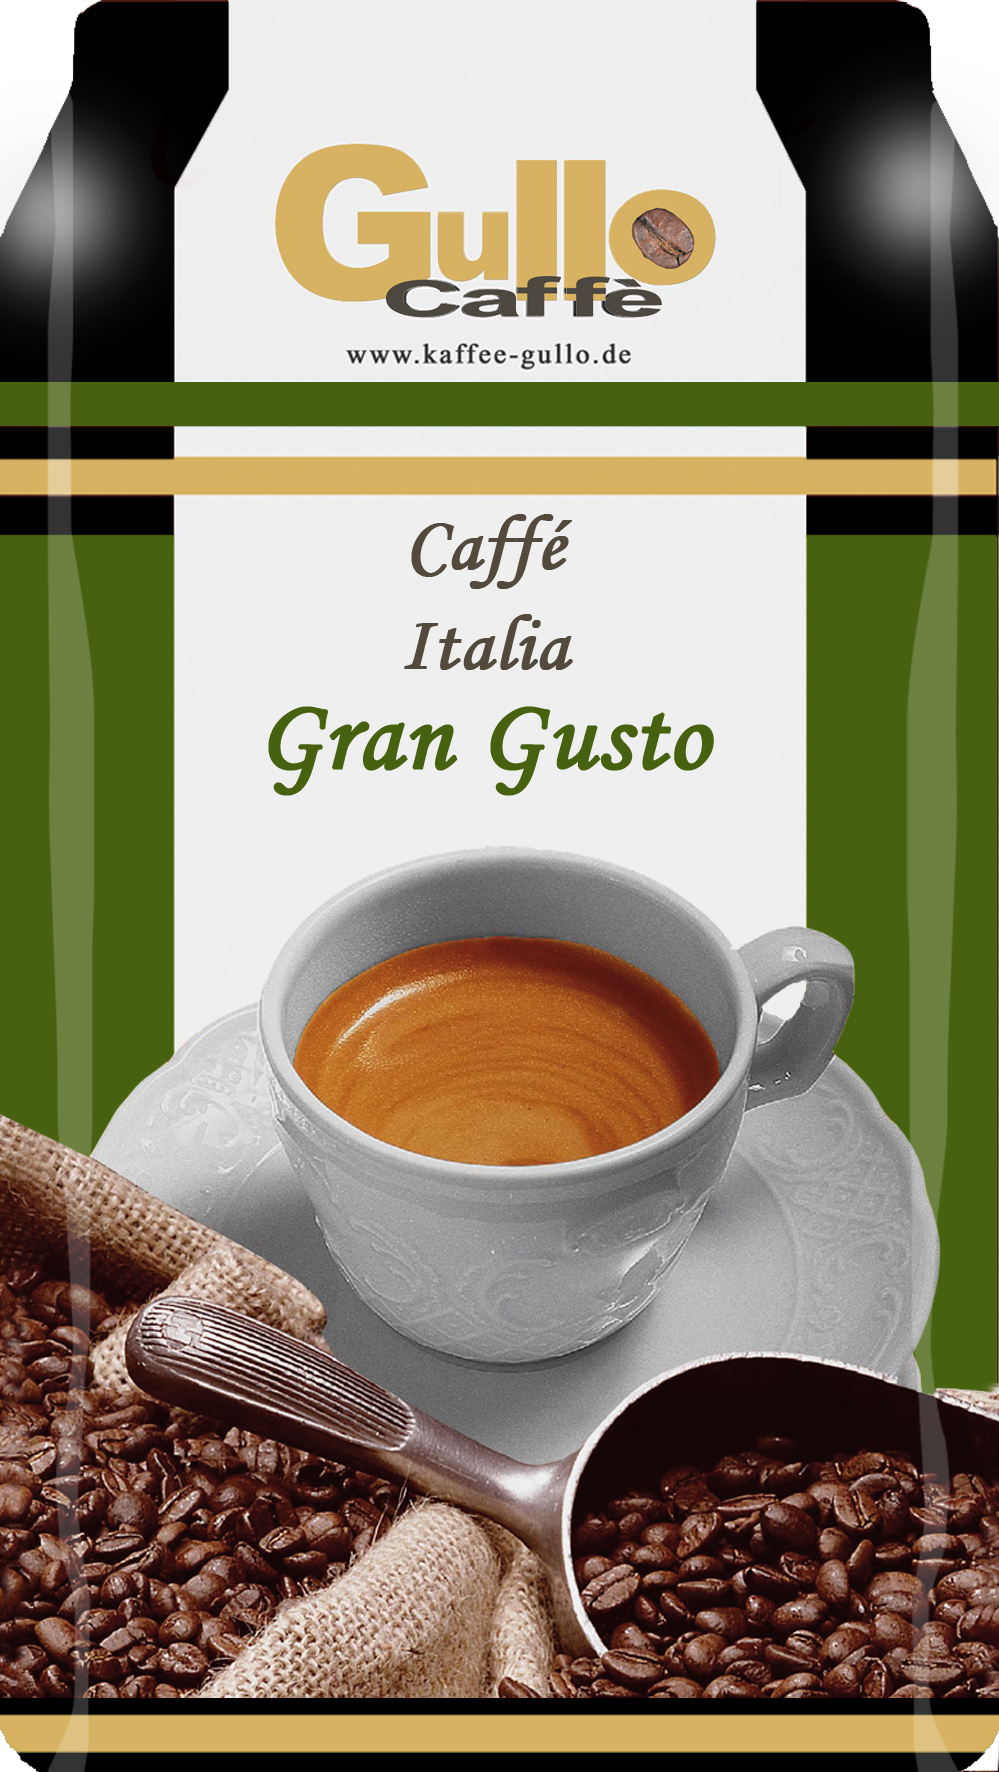 Gullo Caffe Italia Gran Gusto